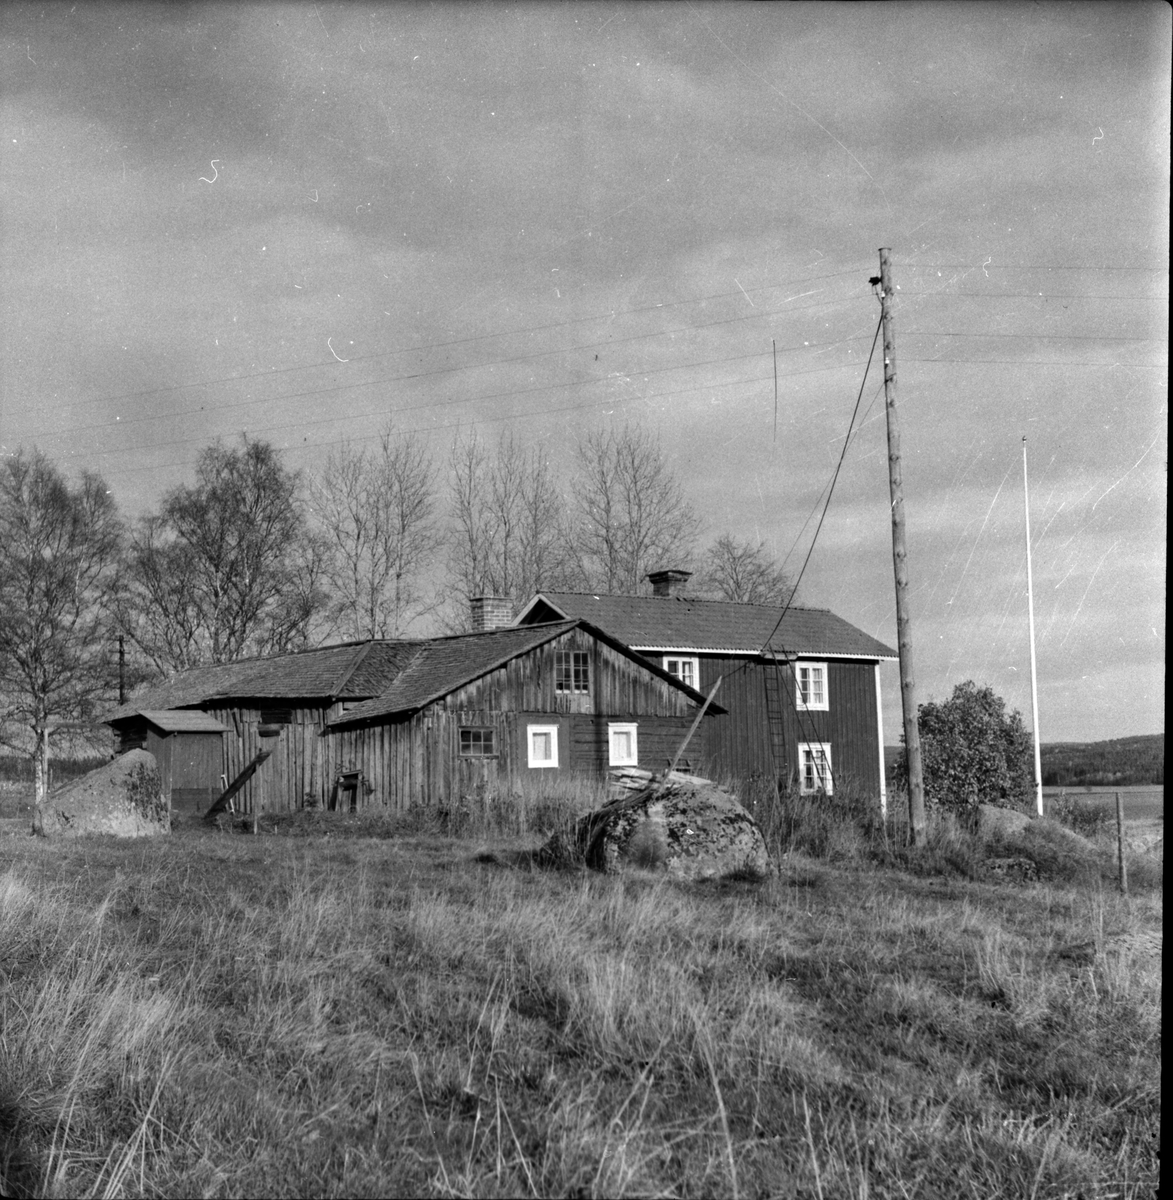 Arbrå,
Postm JA Flink,
Mars 1968